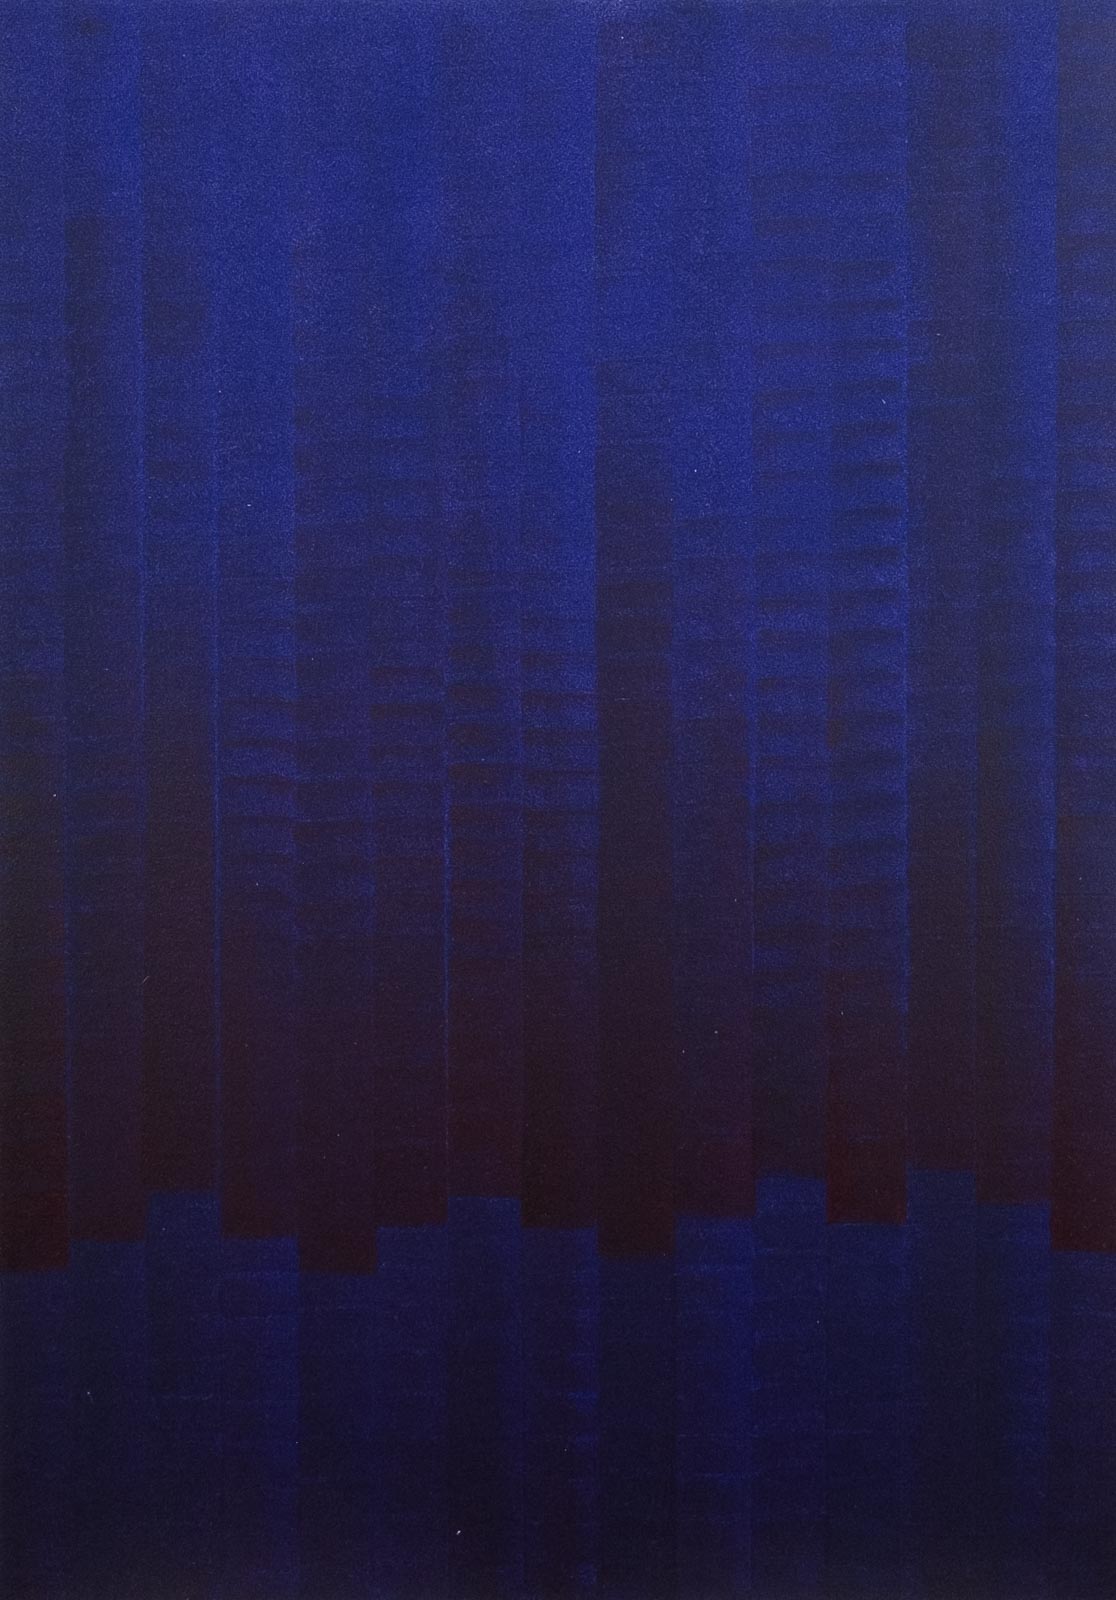 BLUE RHYTHM - Acrylic on paper - Format 40X30